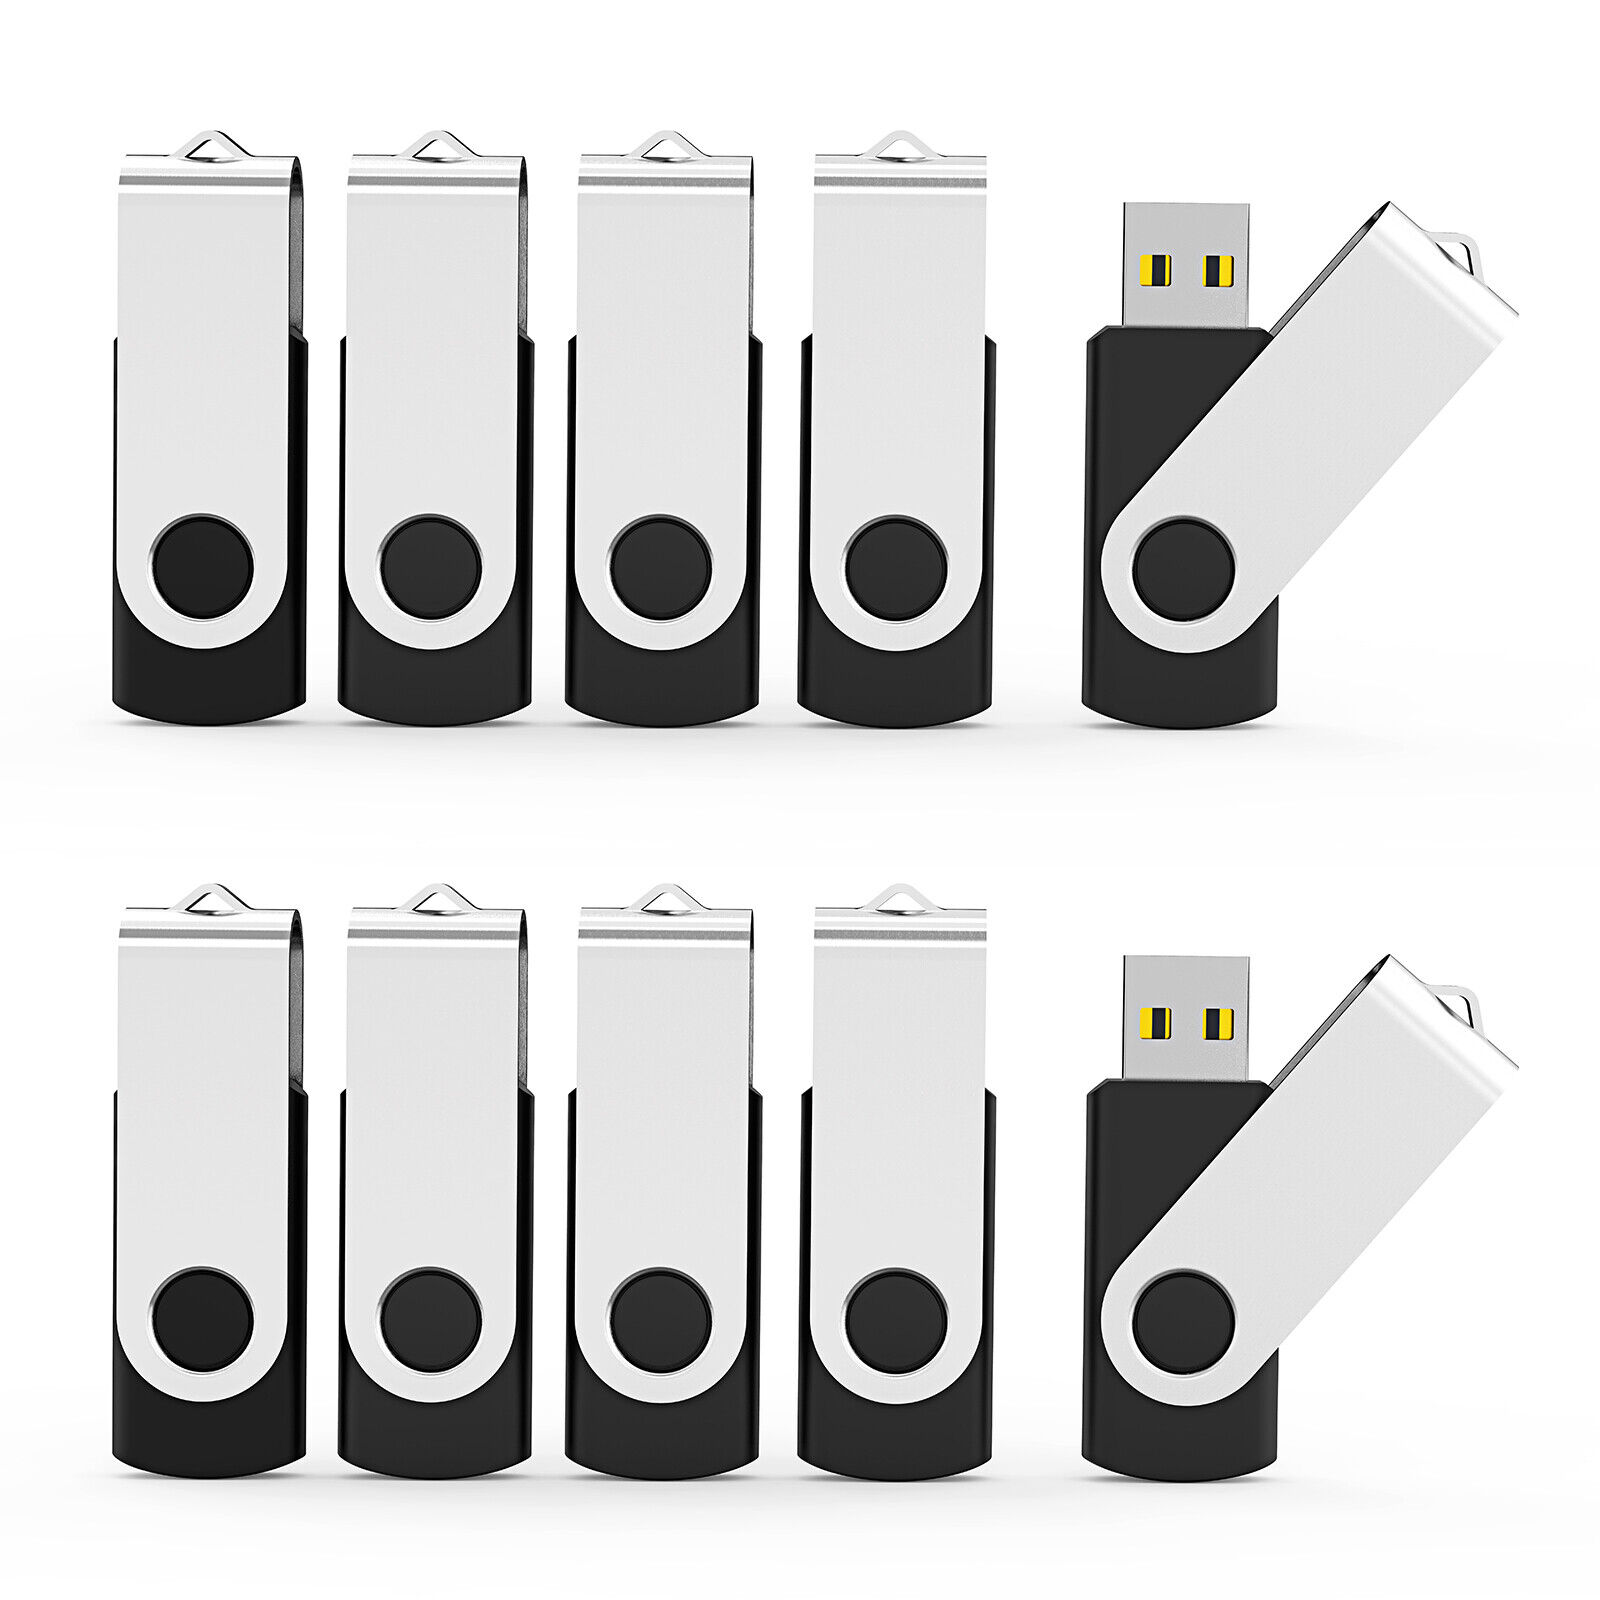 Kootion Lot 10/50/100Pcs 4GB USB 2.0 Metal Anti-skid Swivel Flash Drives Memory 